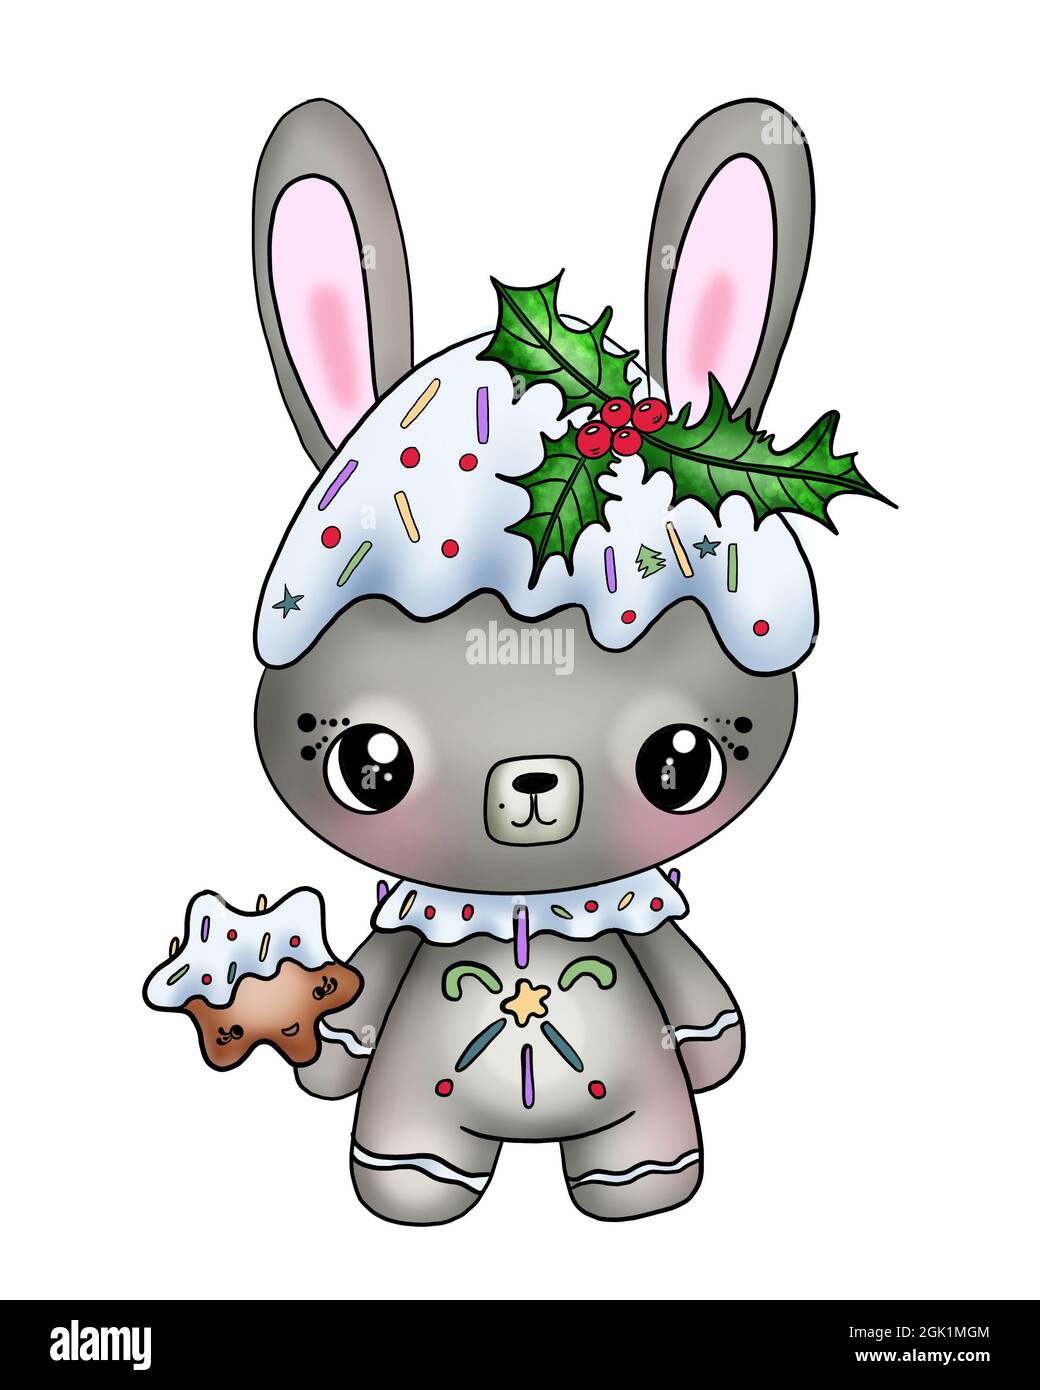 Illustration d'un joli lapin avec décoration de Noël et branches de poinsettia avec baies sur sa tête sur un fond blanc isolé Banque D'Images